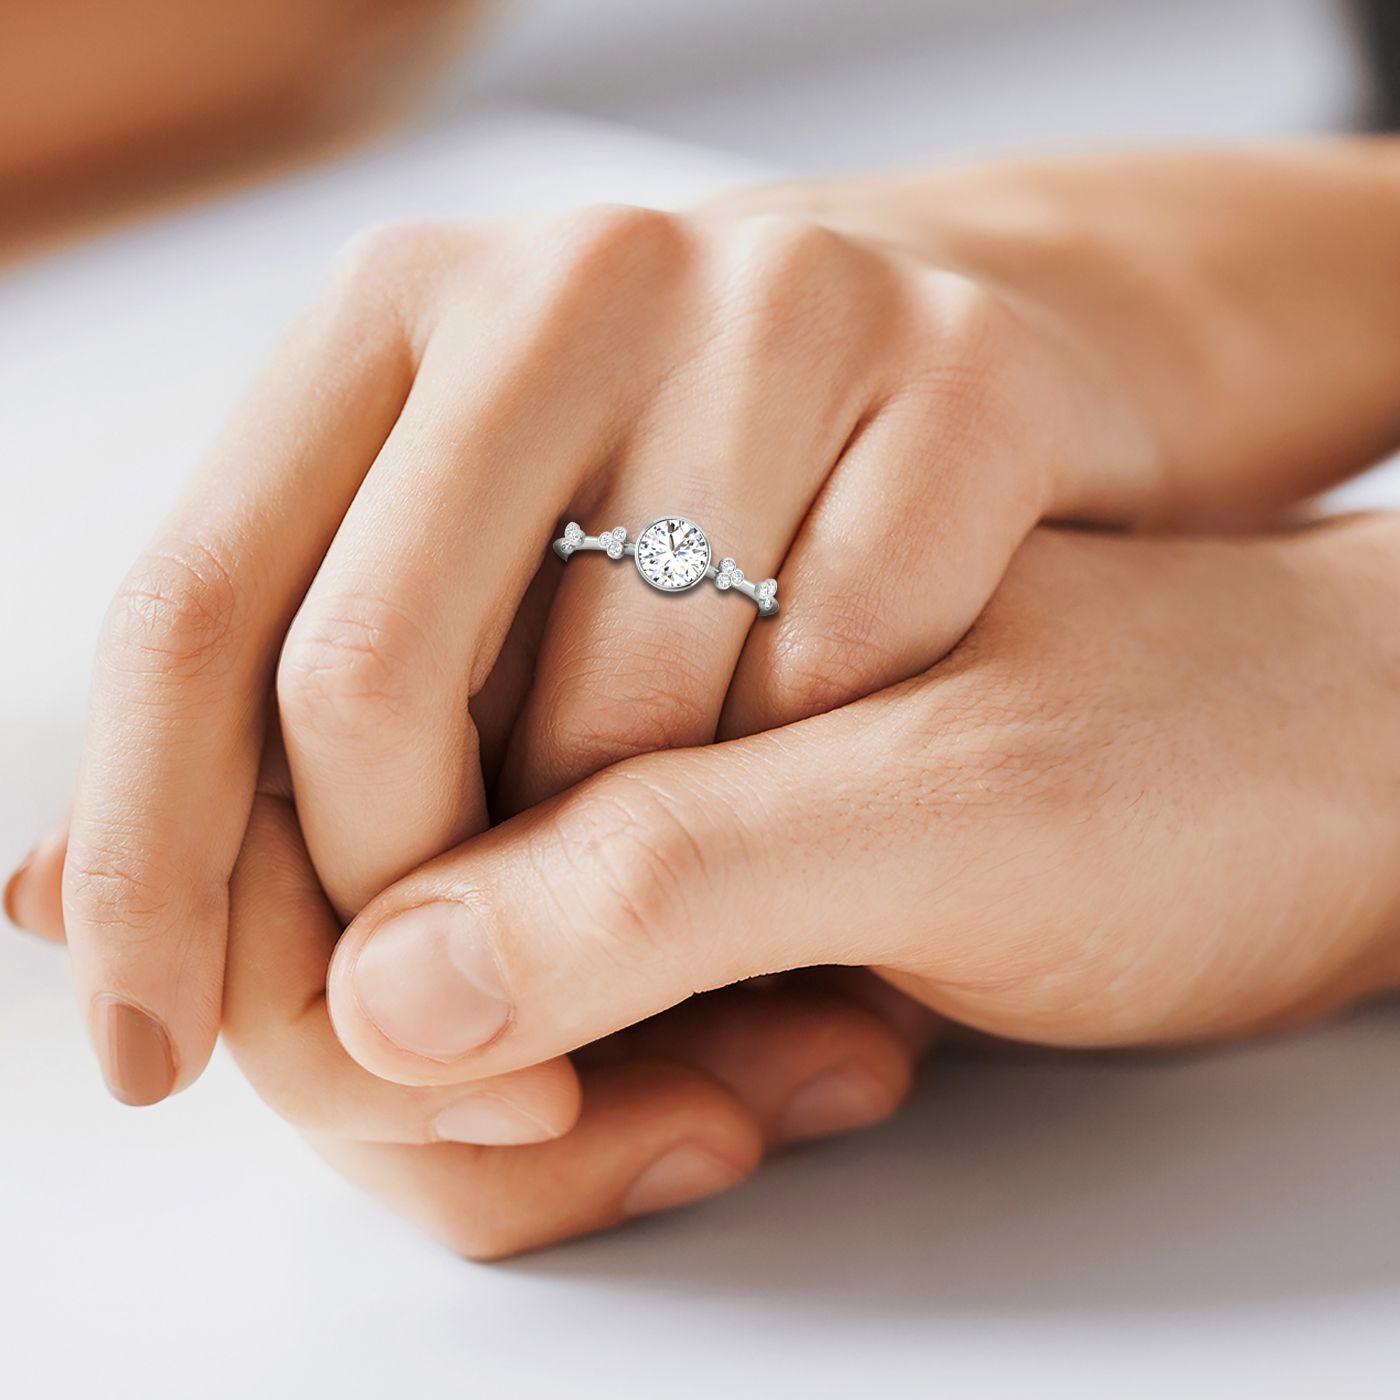 14kw Bezel Set Round Engagement Ring With 12 Clover Bezel Set Round Diamonds On Shank